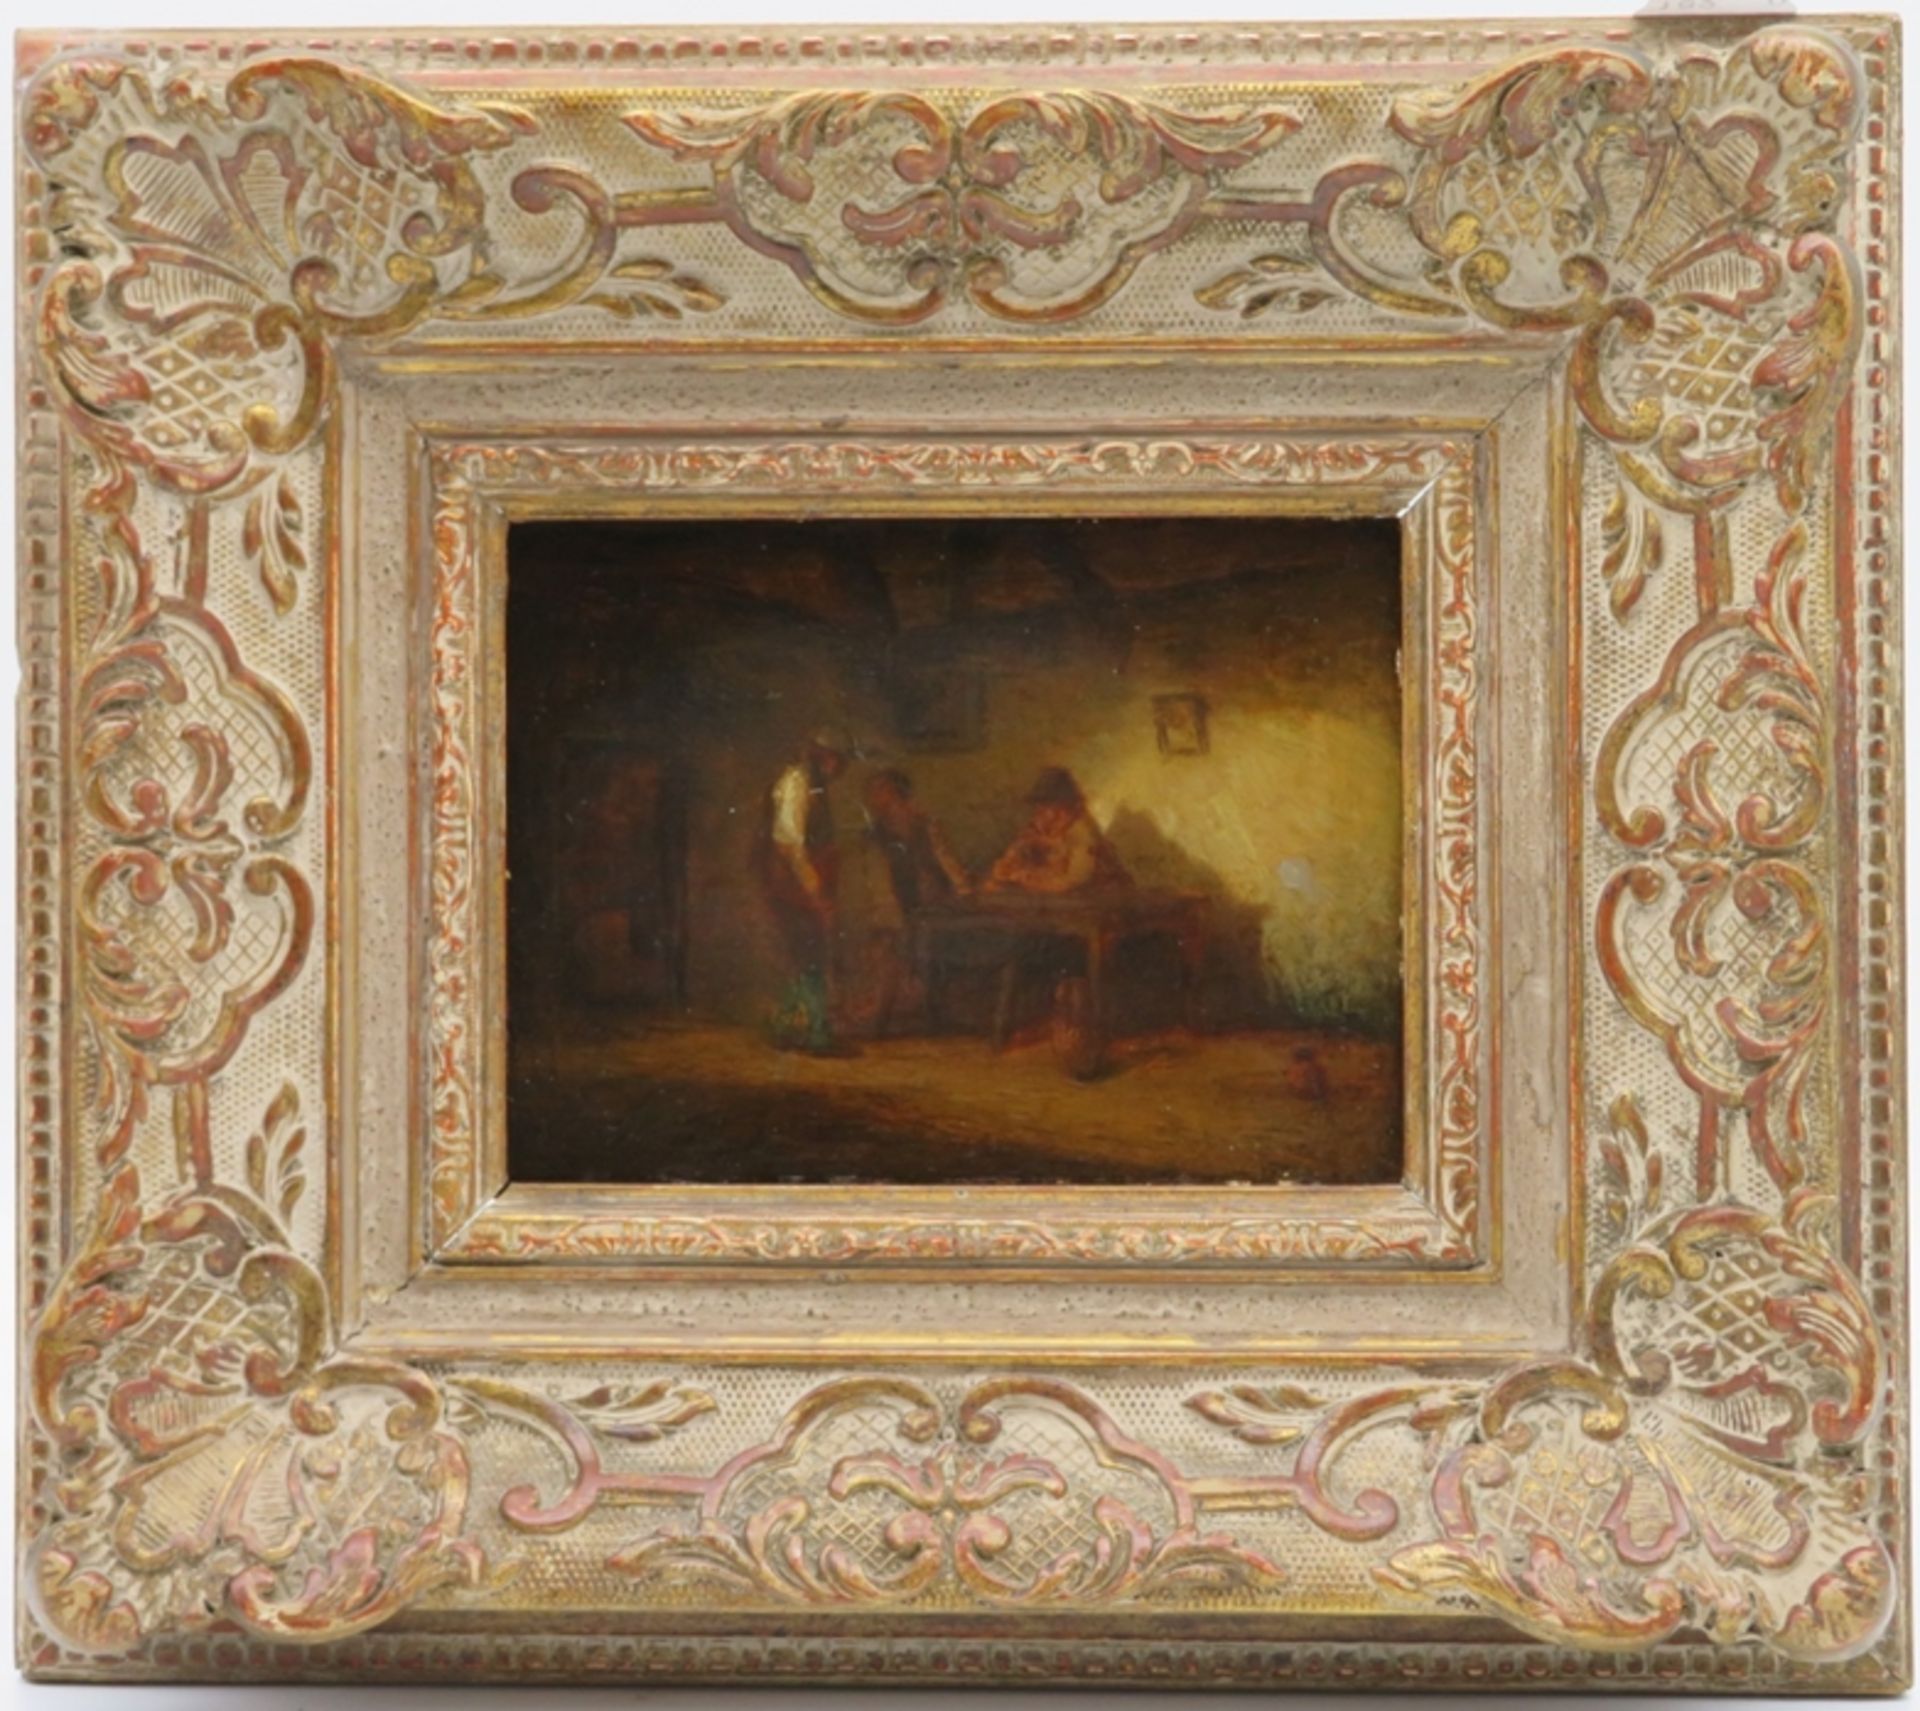 Jacque, Charles Émile, 1813 - 1894, Paris - ebd., Französischer Maler und Grafiker, - Image 2 of 3